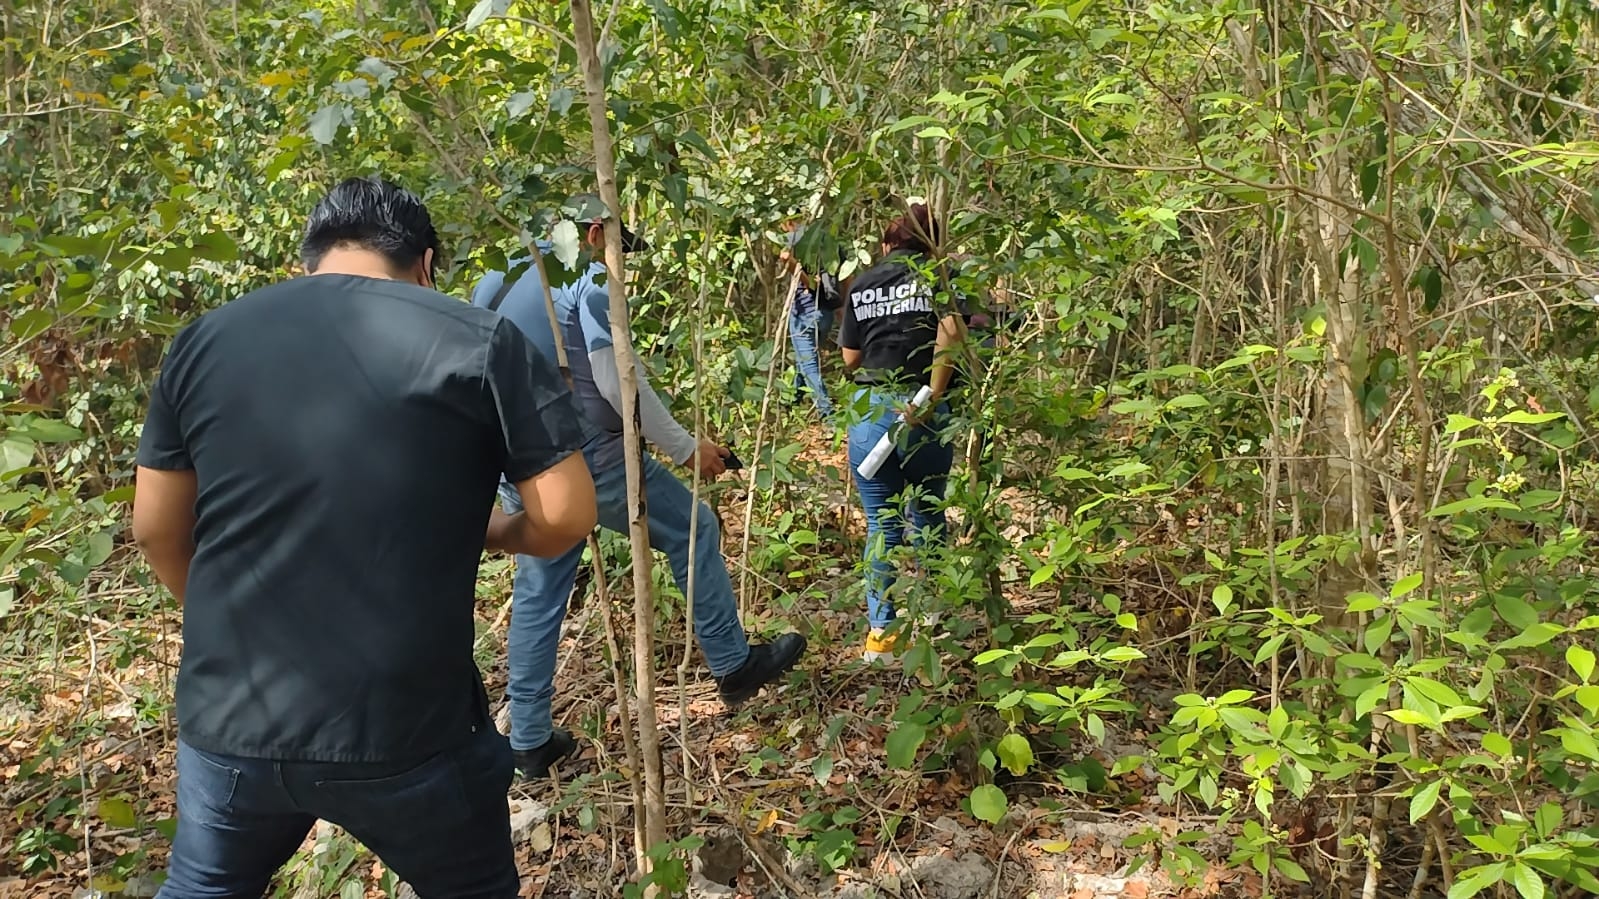 Familiares del hombre desaparecido en Carrillo Puerto, reportaron olores putrefactos emanando de una zona cercana al cementerio municipal